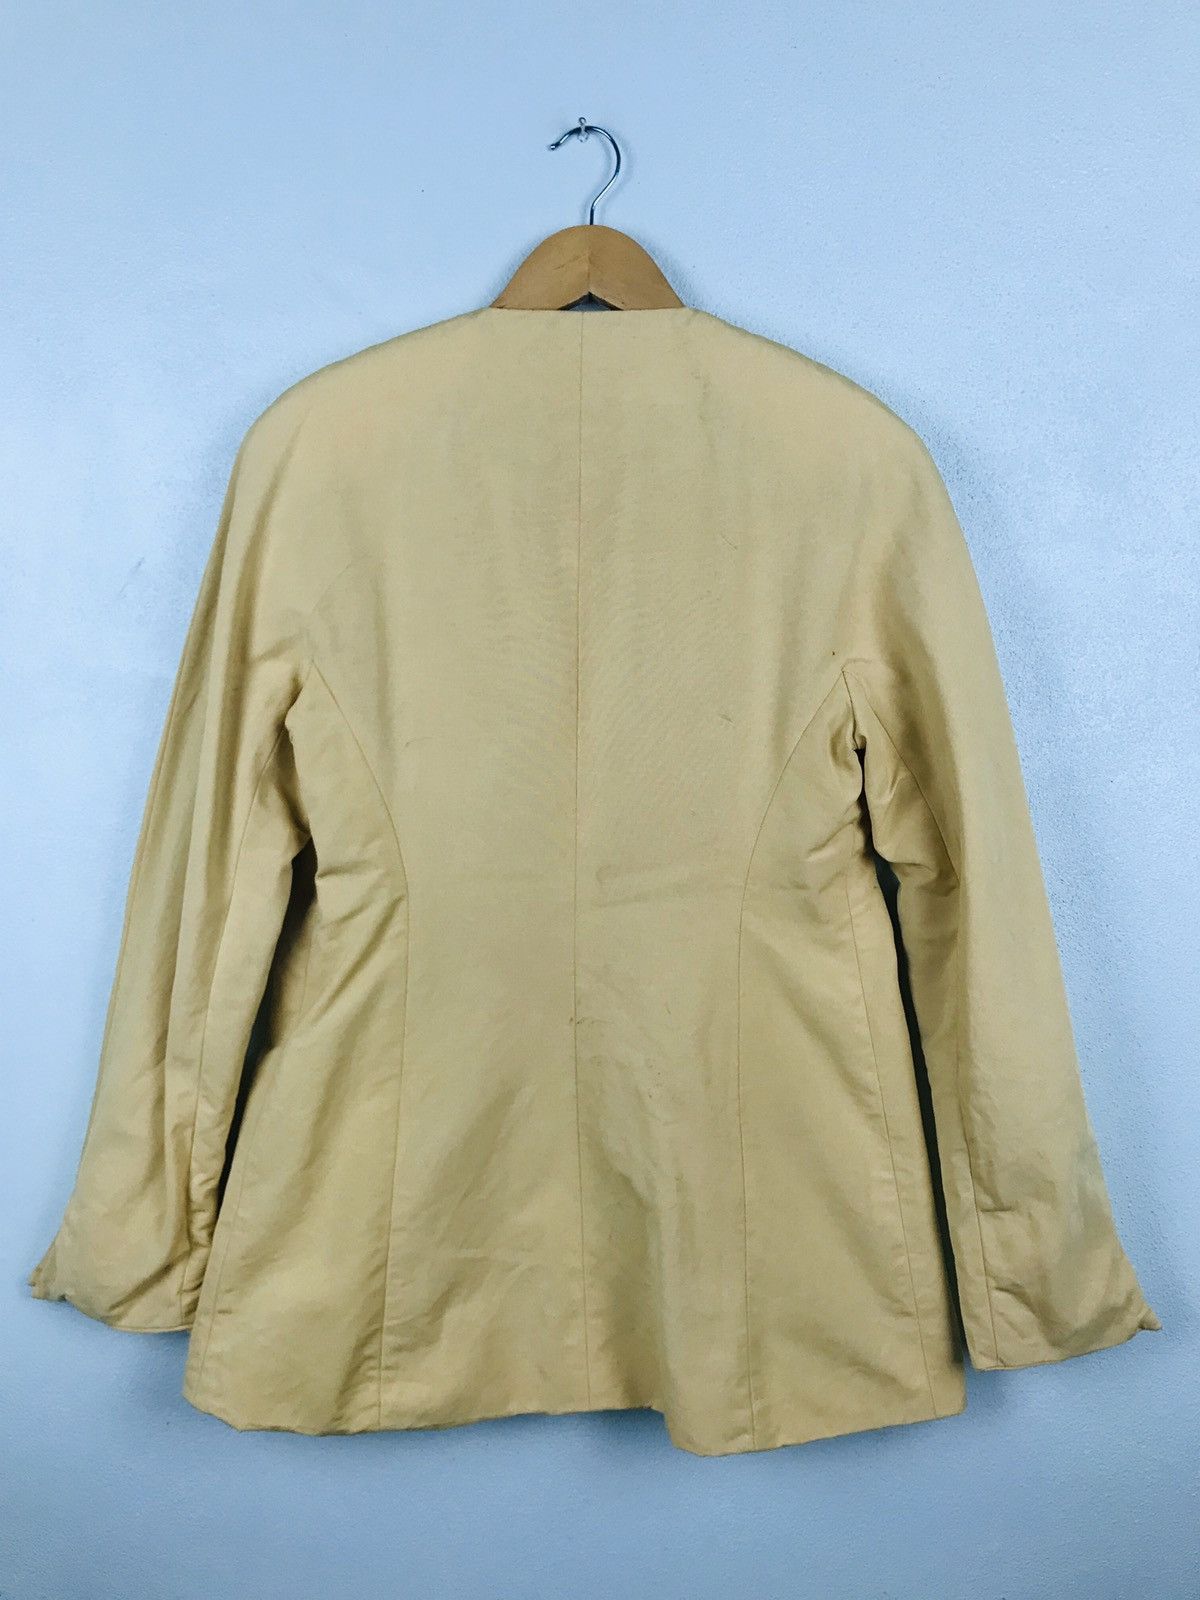 Lanvin Paris jacket with gold button - gh1519 - 5